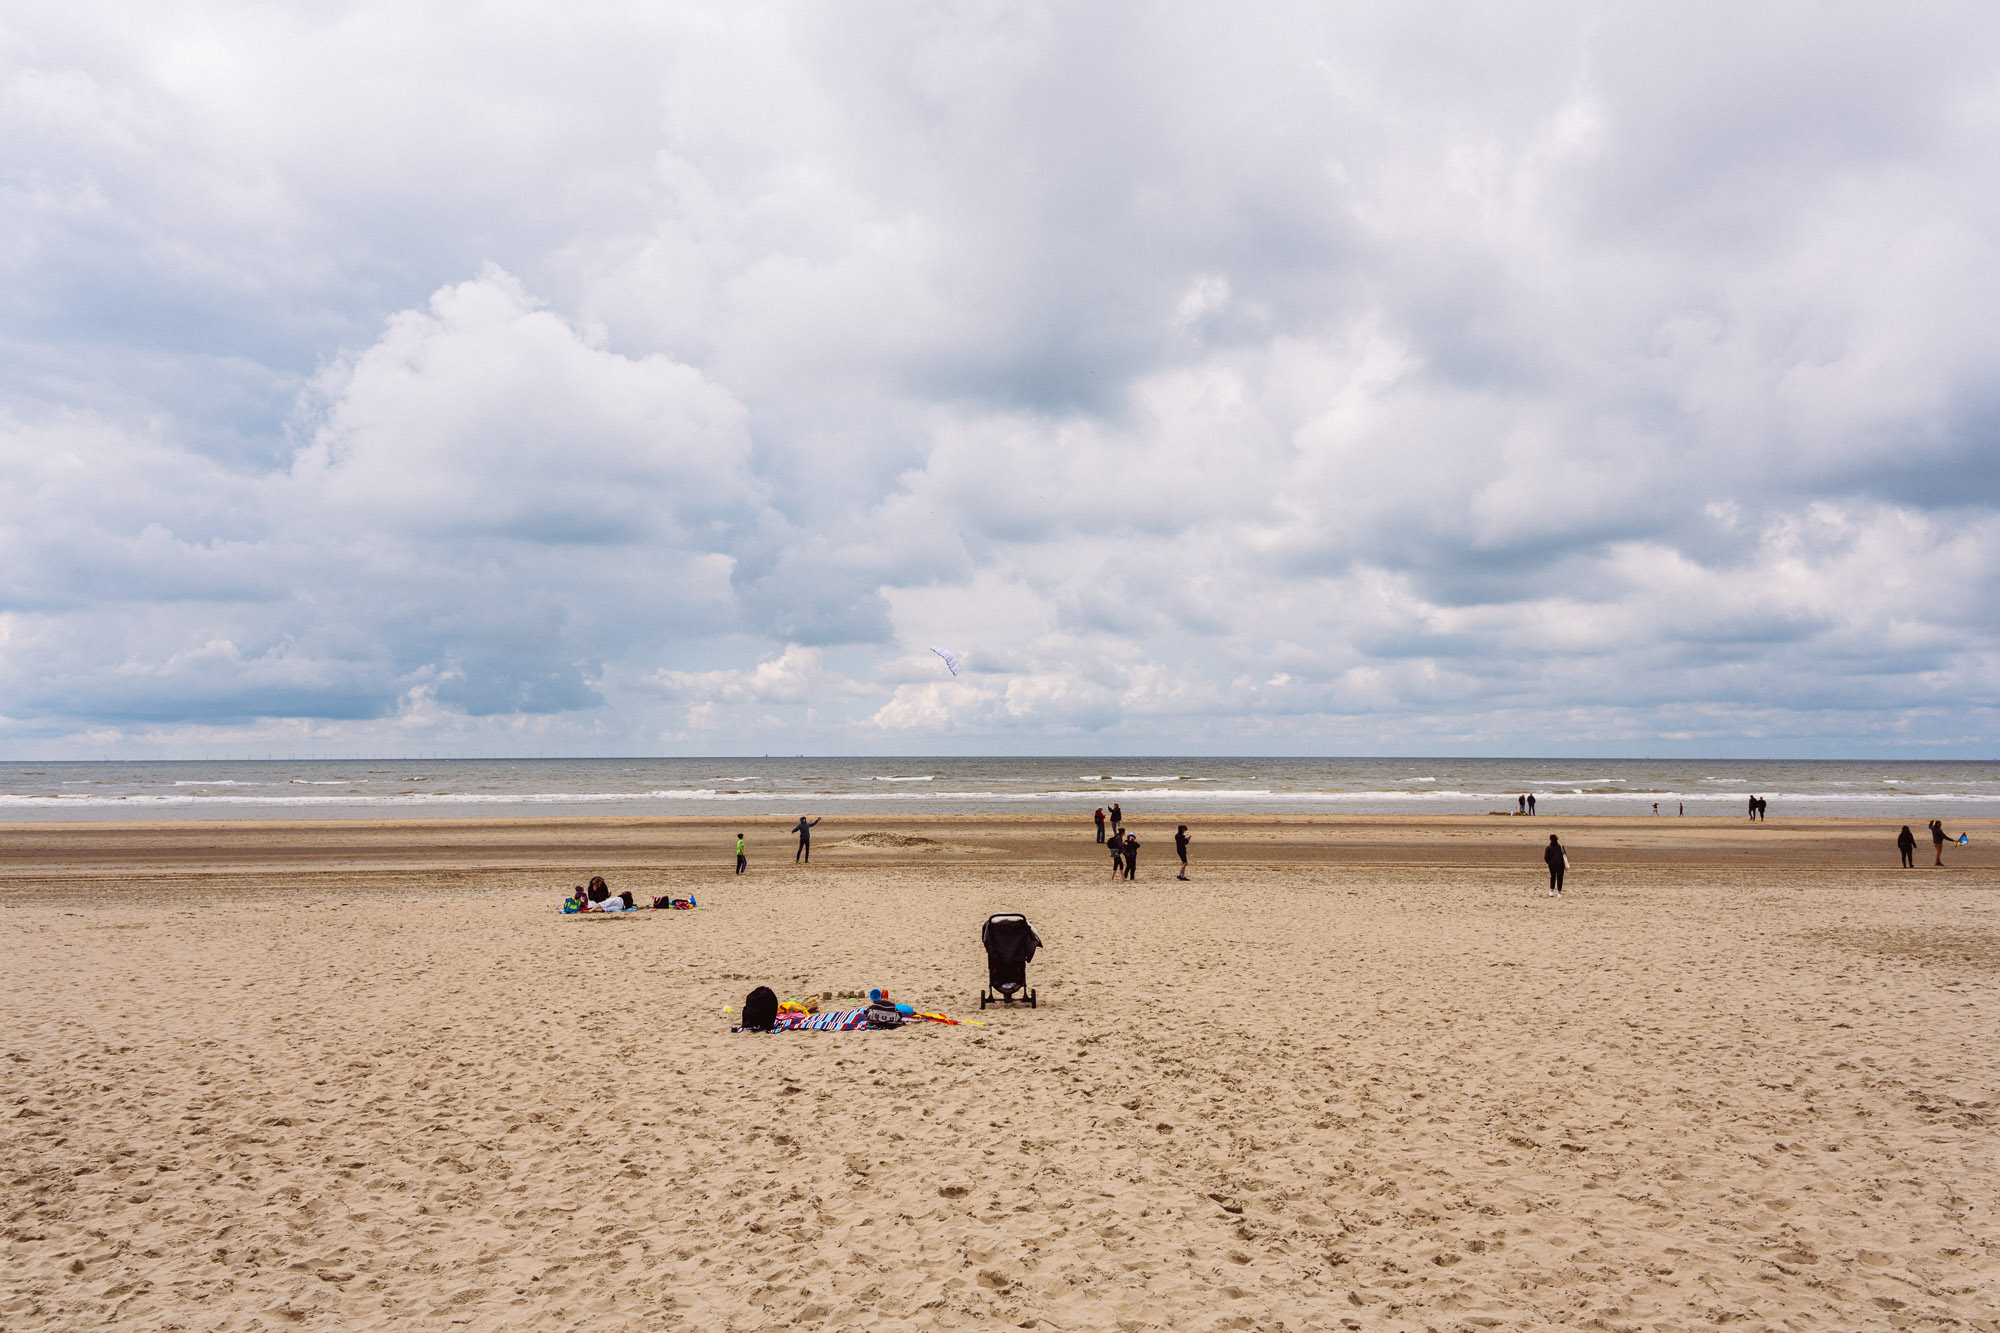 Beach - Zandvoort - Netherlands - Europe